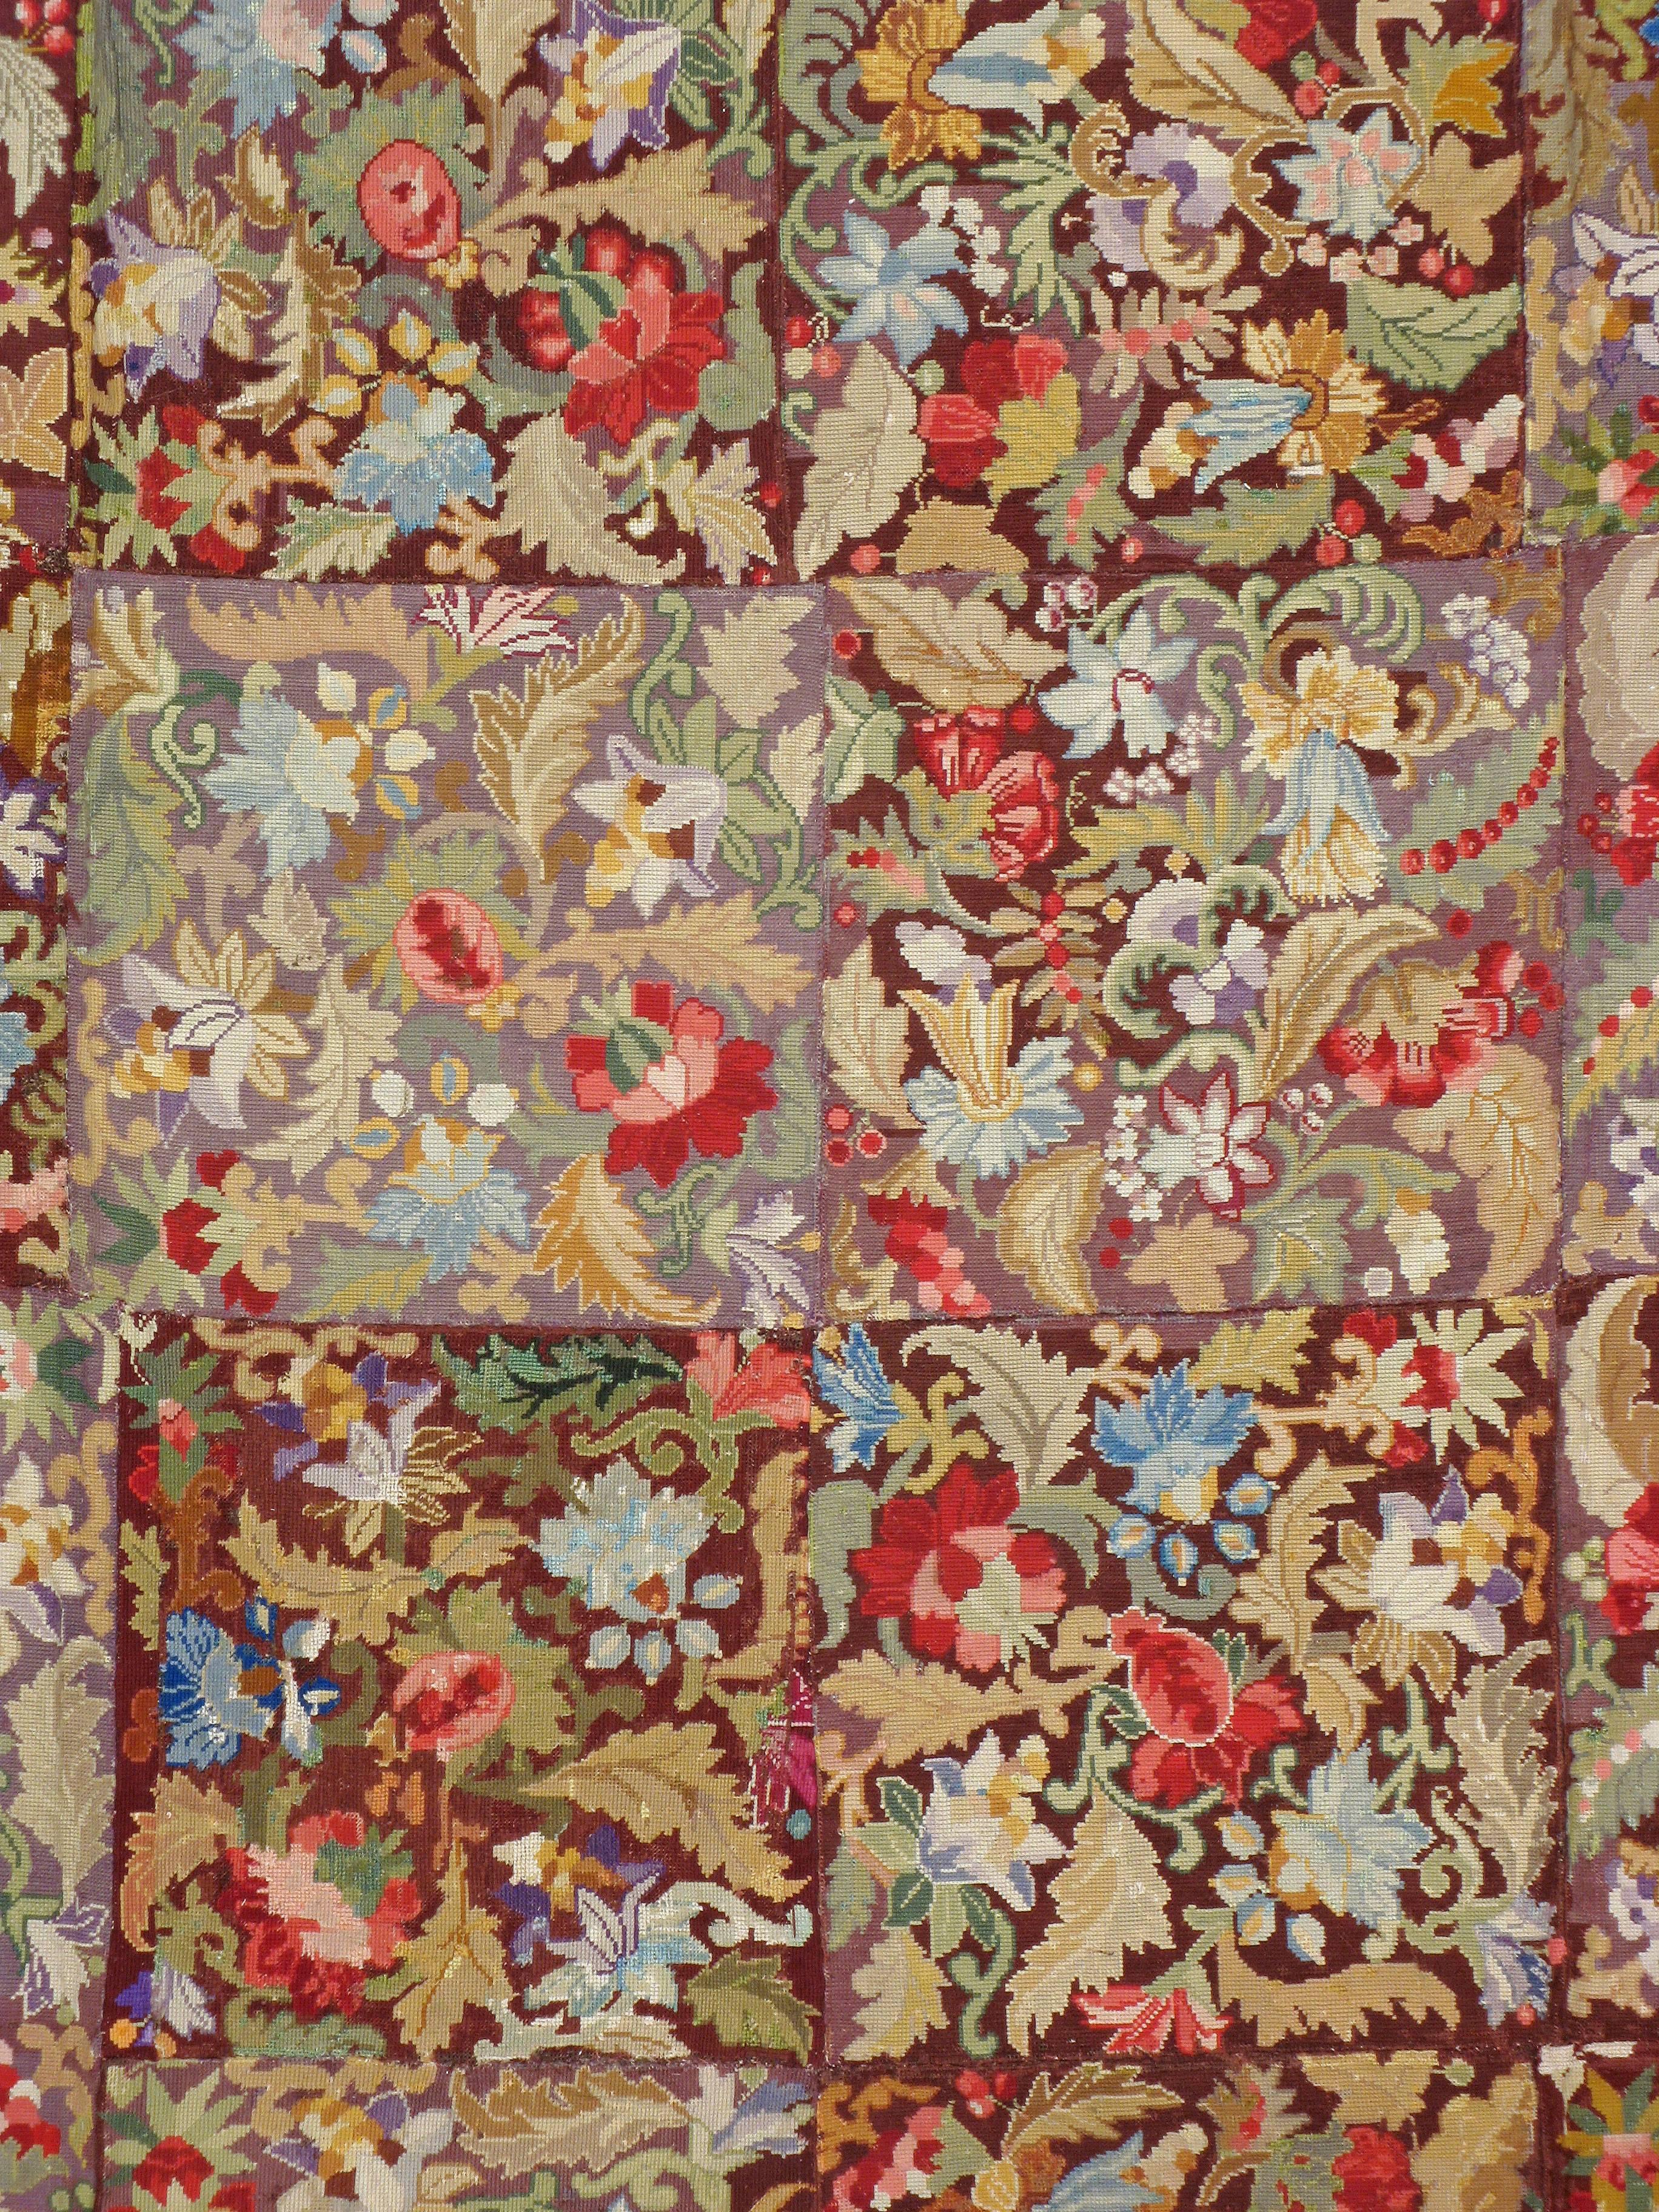 Ein antiker englischer Nadelteppich aus dem ersten Viertel des 20. Jahrhunderts.

Maße: 9' 10